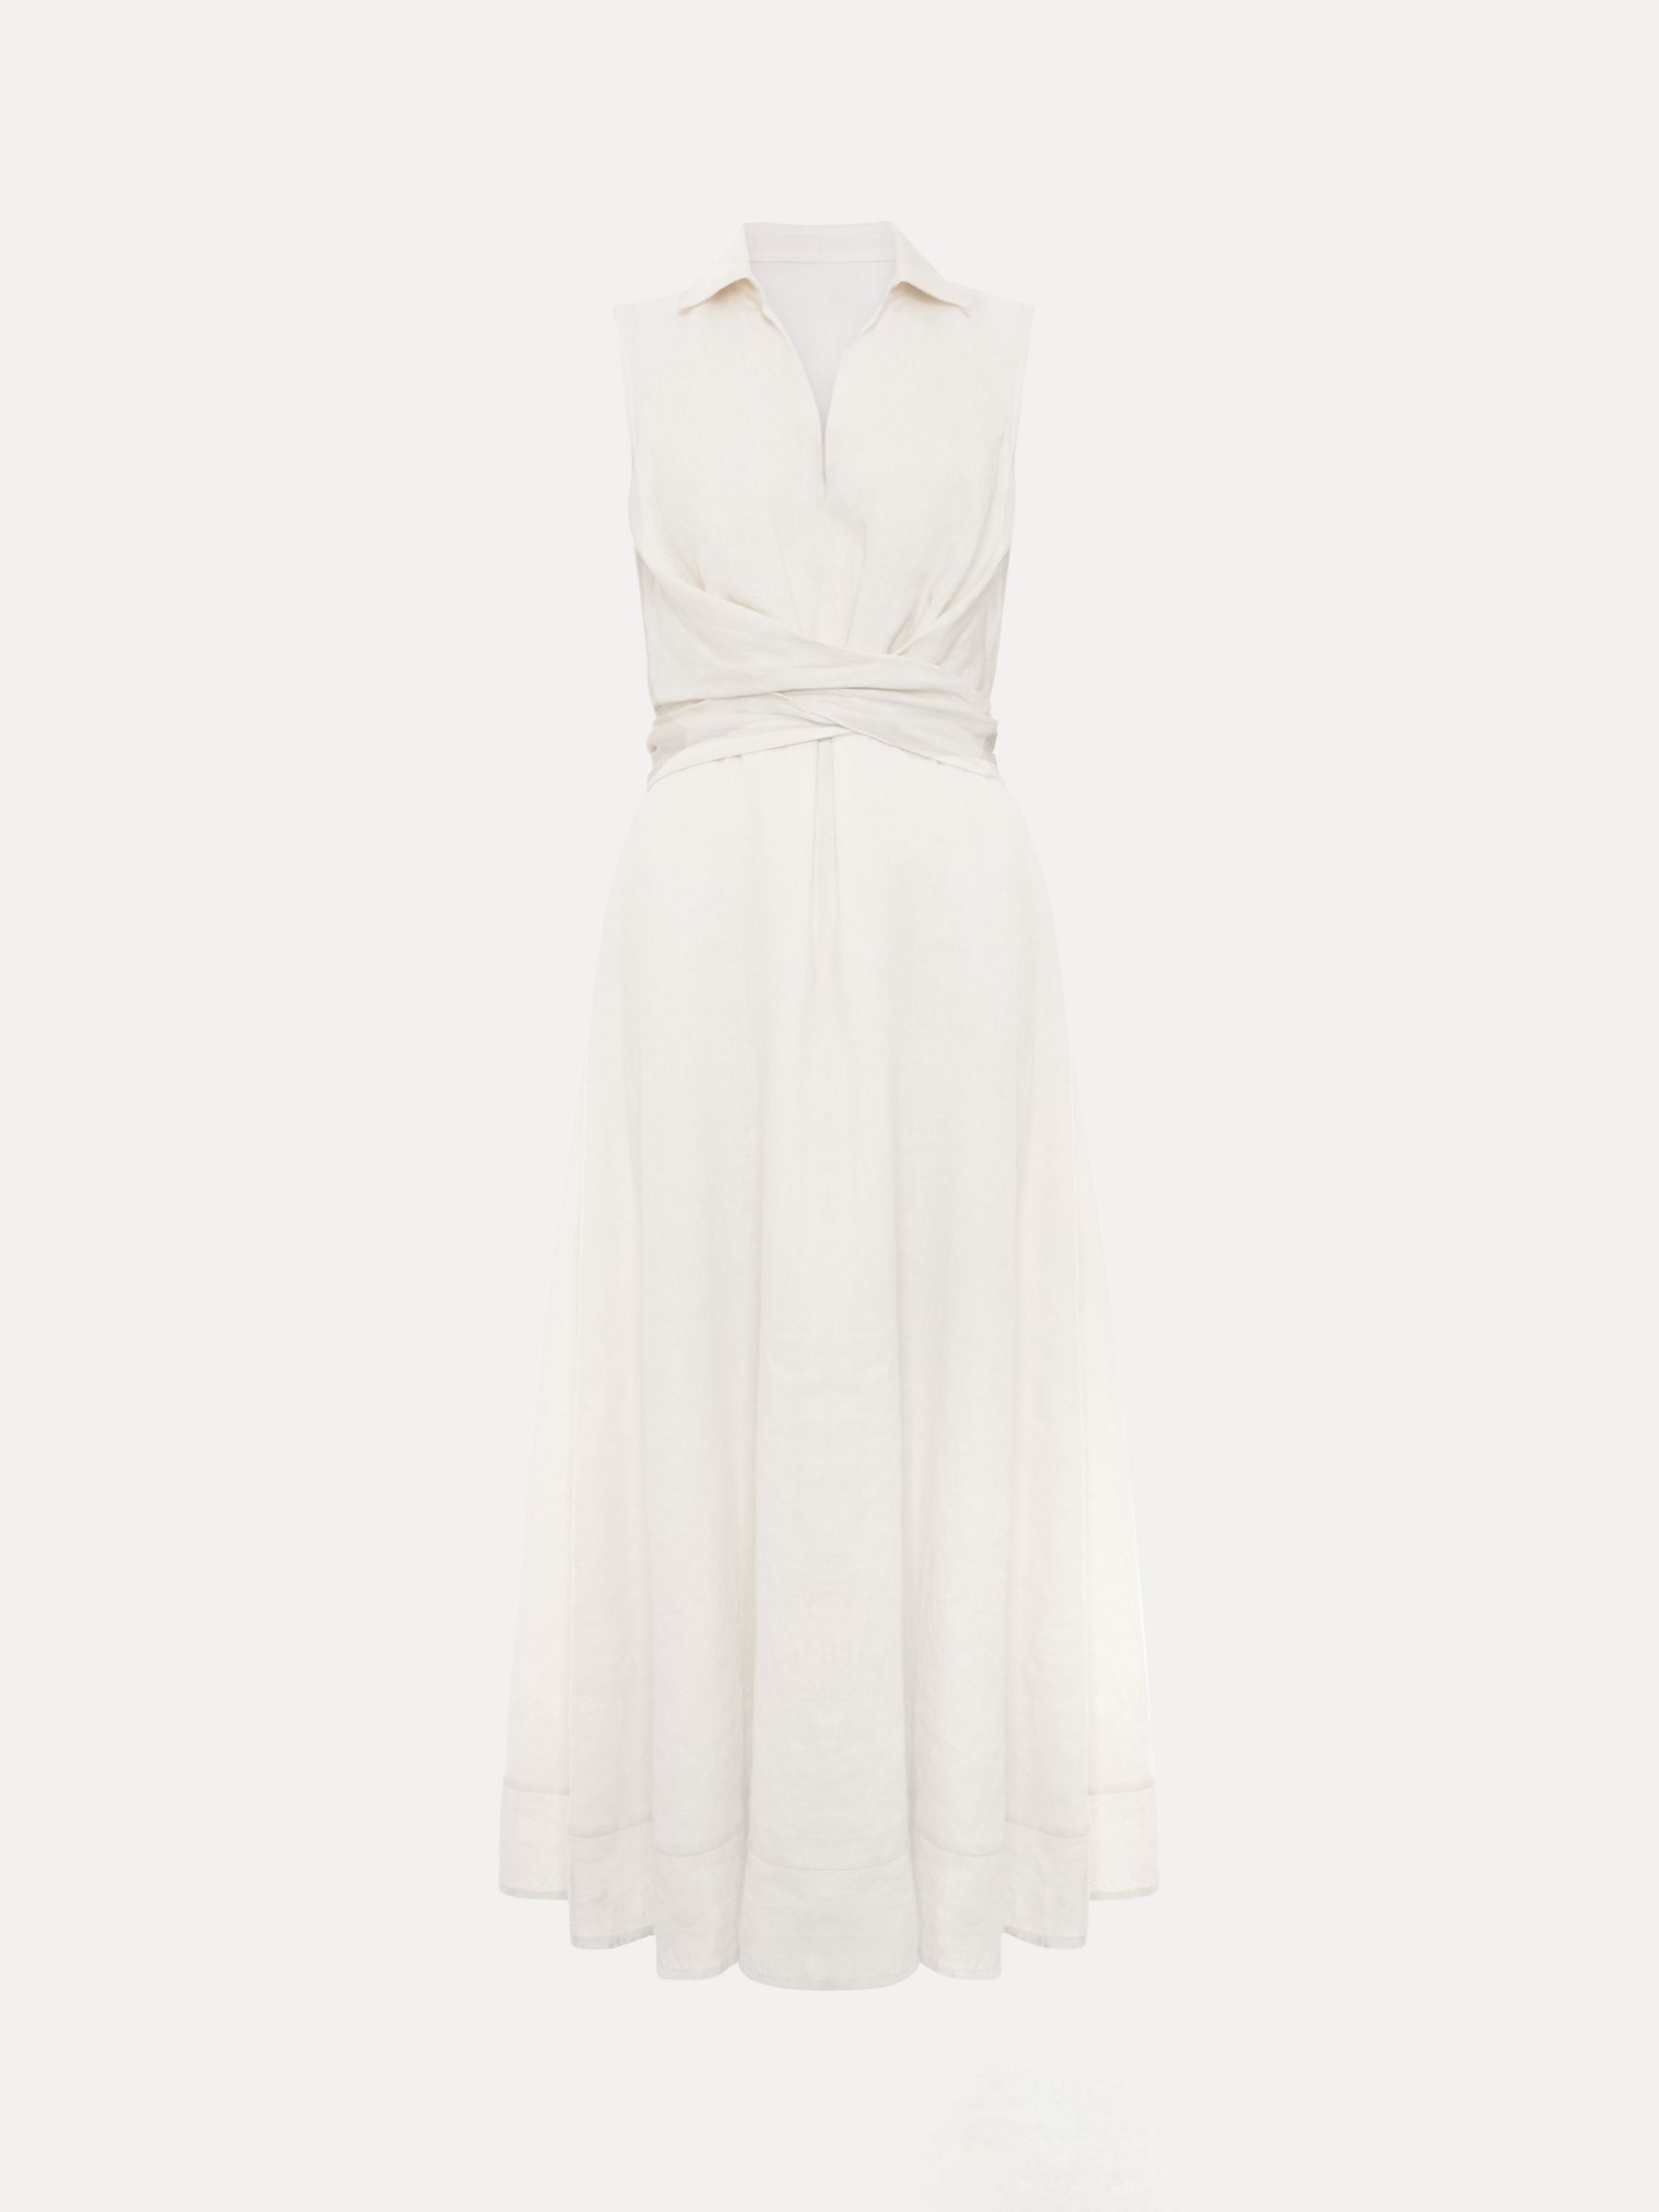 Phase Eight Becky Midi Linen Blend Dress, White, 16